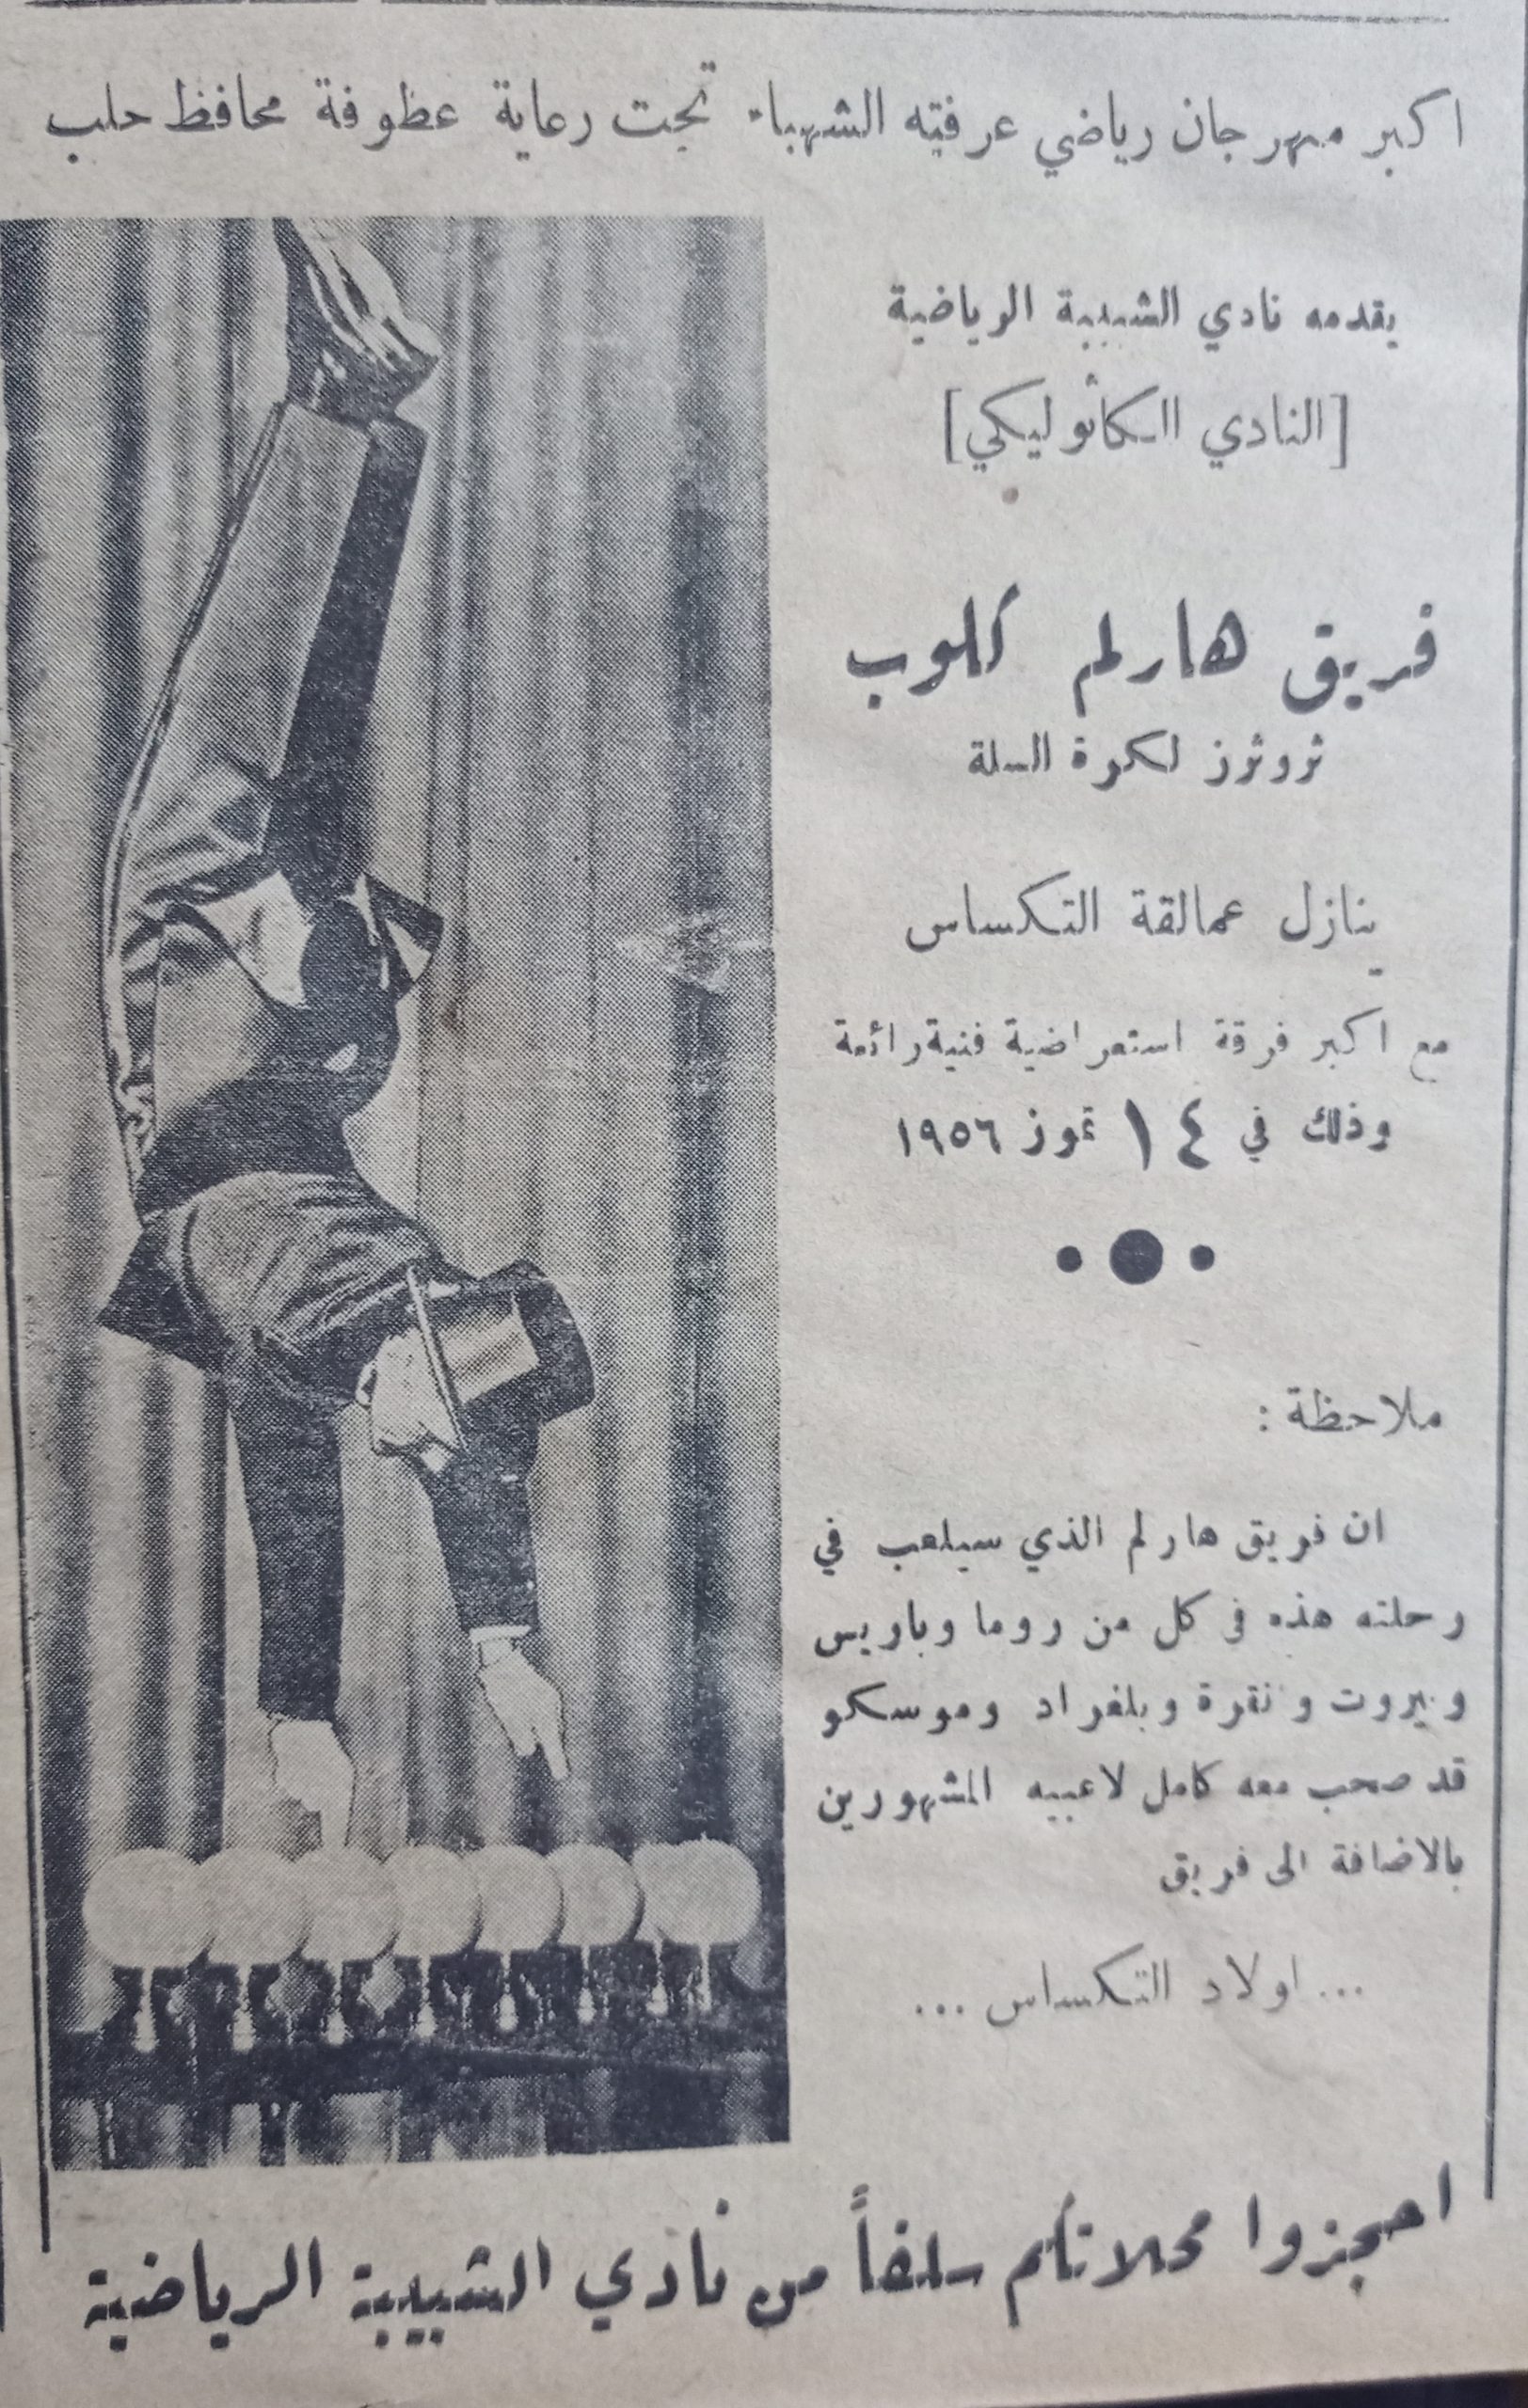 التاريخ السوري المعاصر - إعلان عن مهرجان رياضي في نادي الشبيبة الرياضي في حلب عام 1956